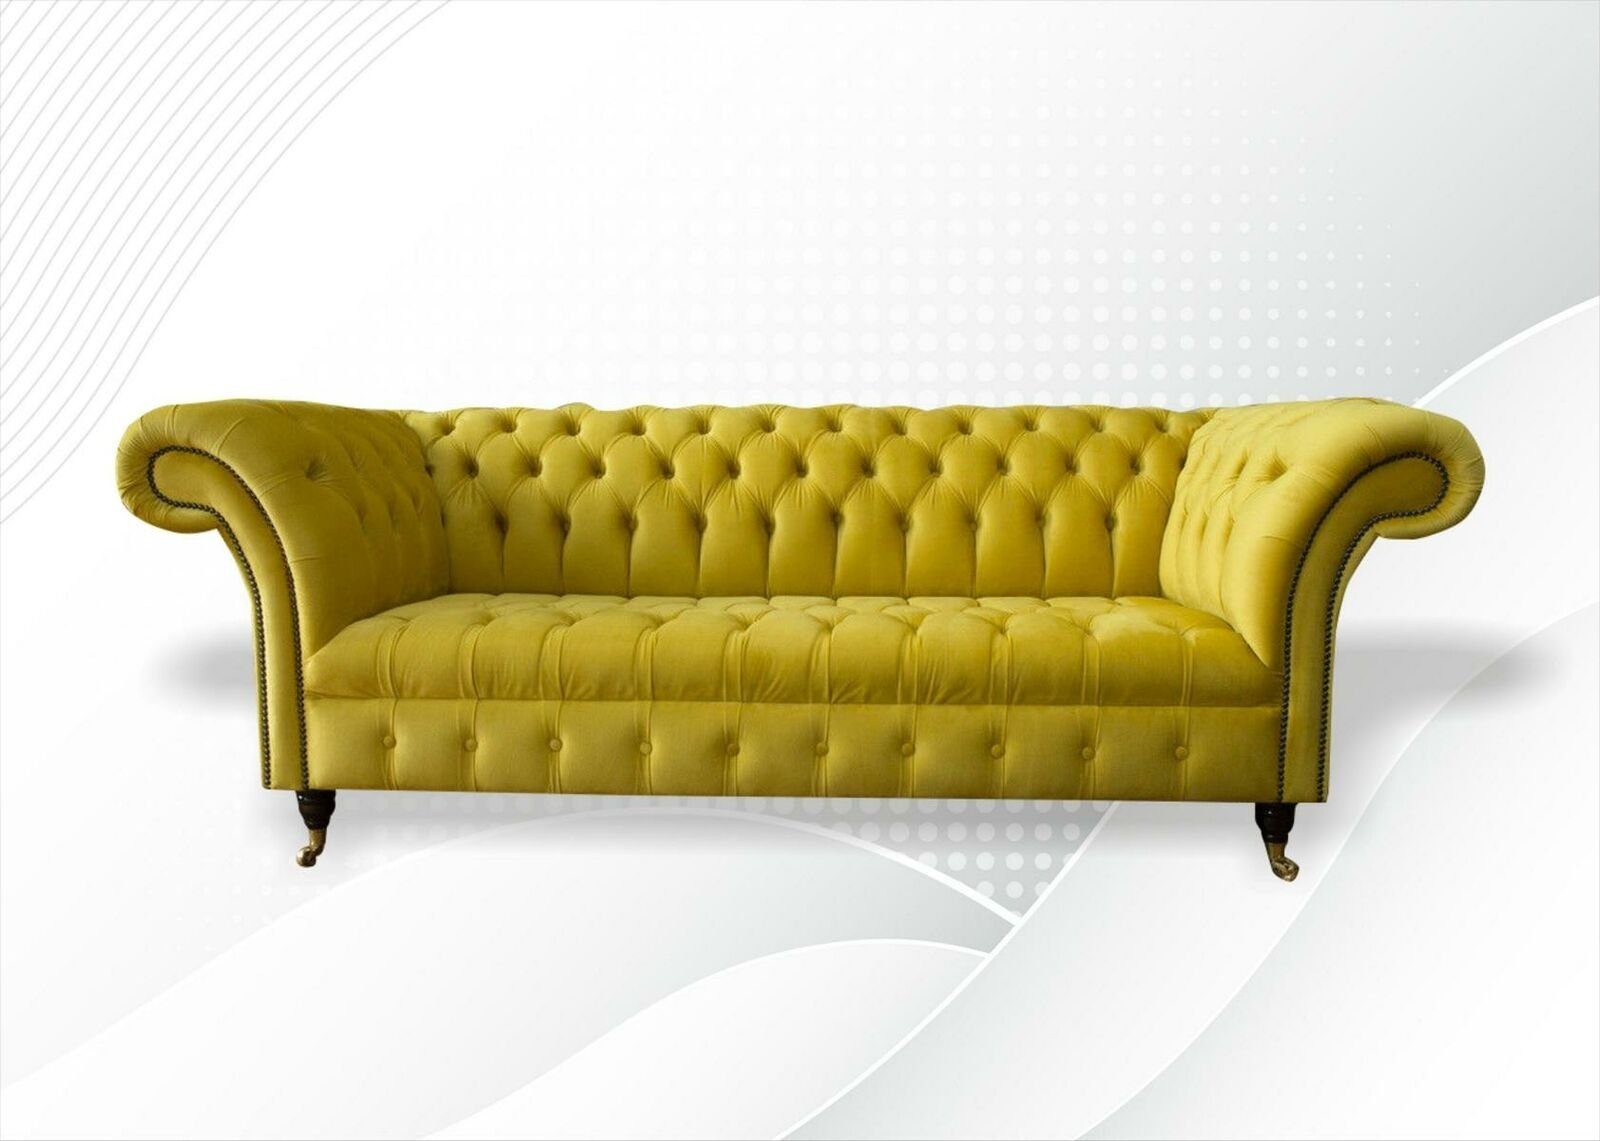 JVmoebel Chesterfield-Sofa Gelber luxus Dreisitzer Chesterfield Design Polster Neu, Made in Europe